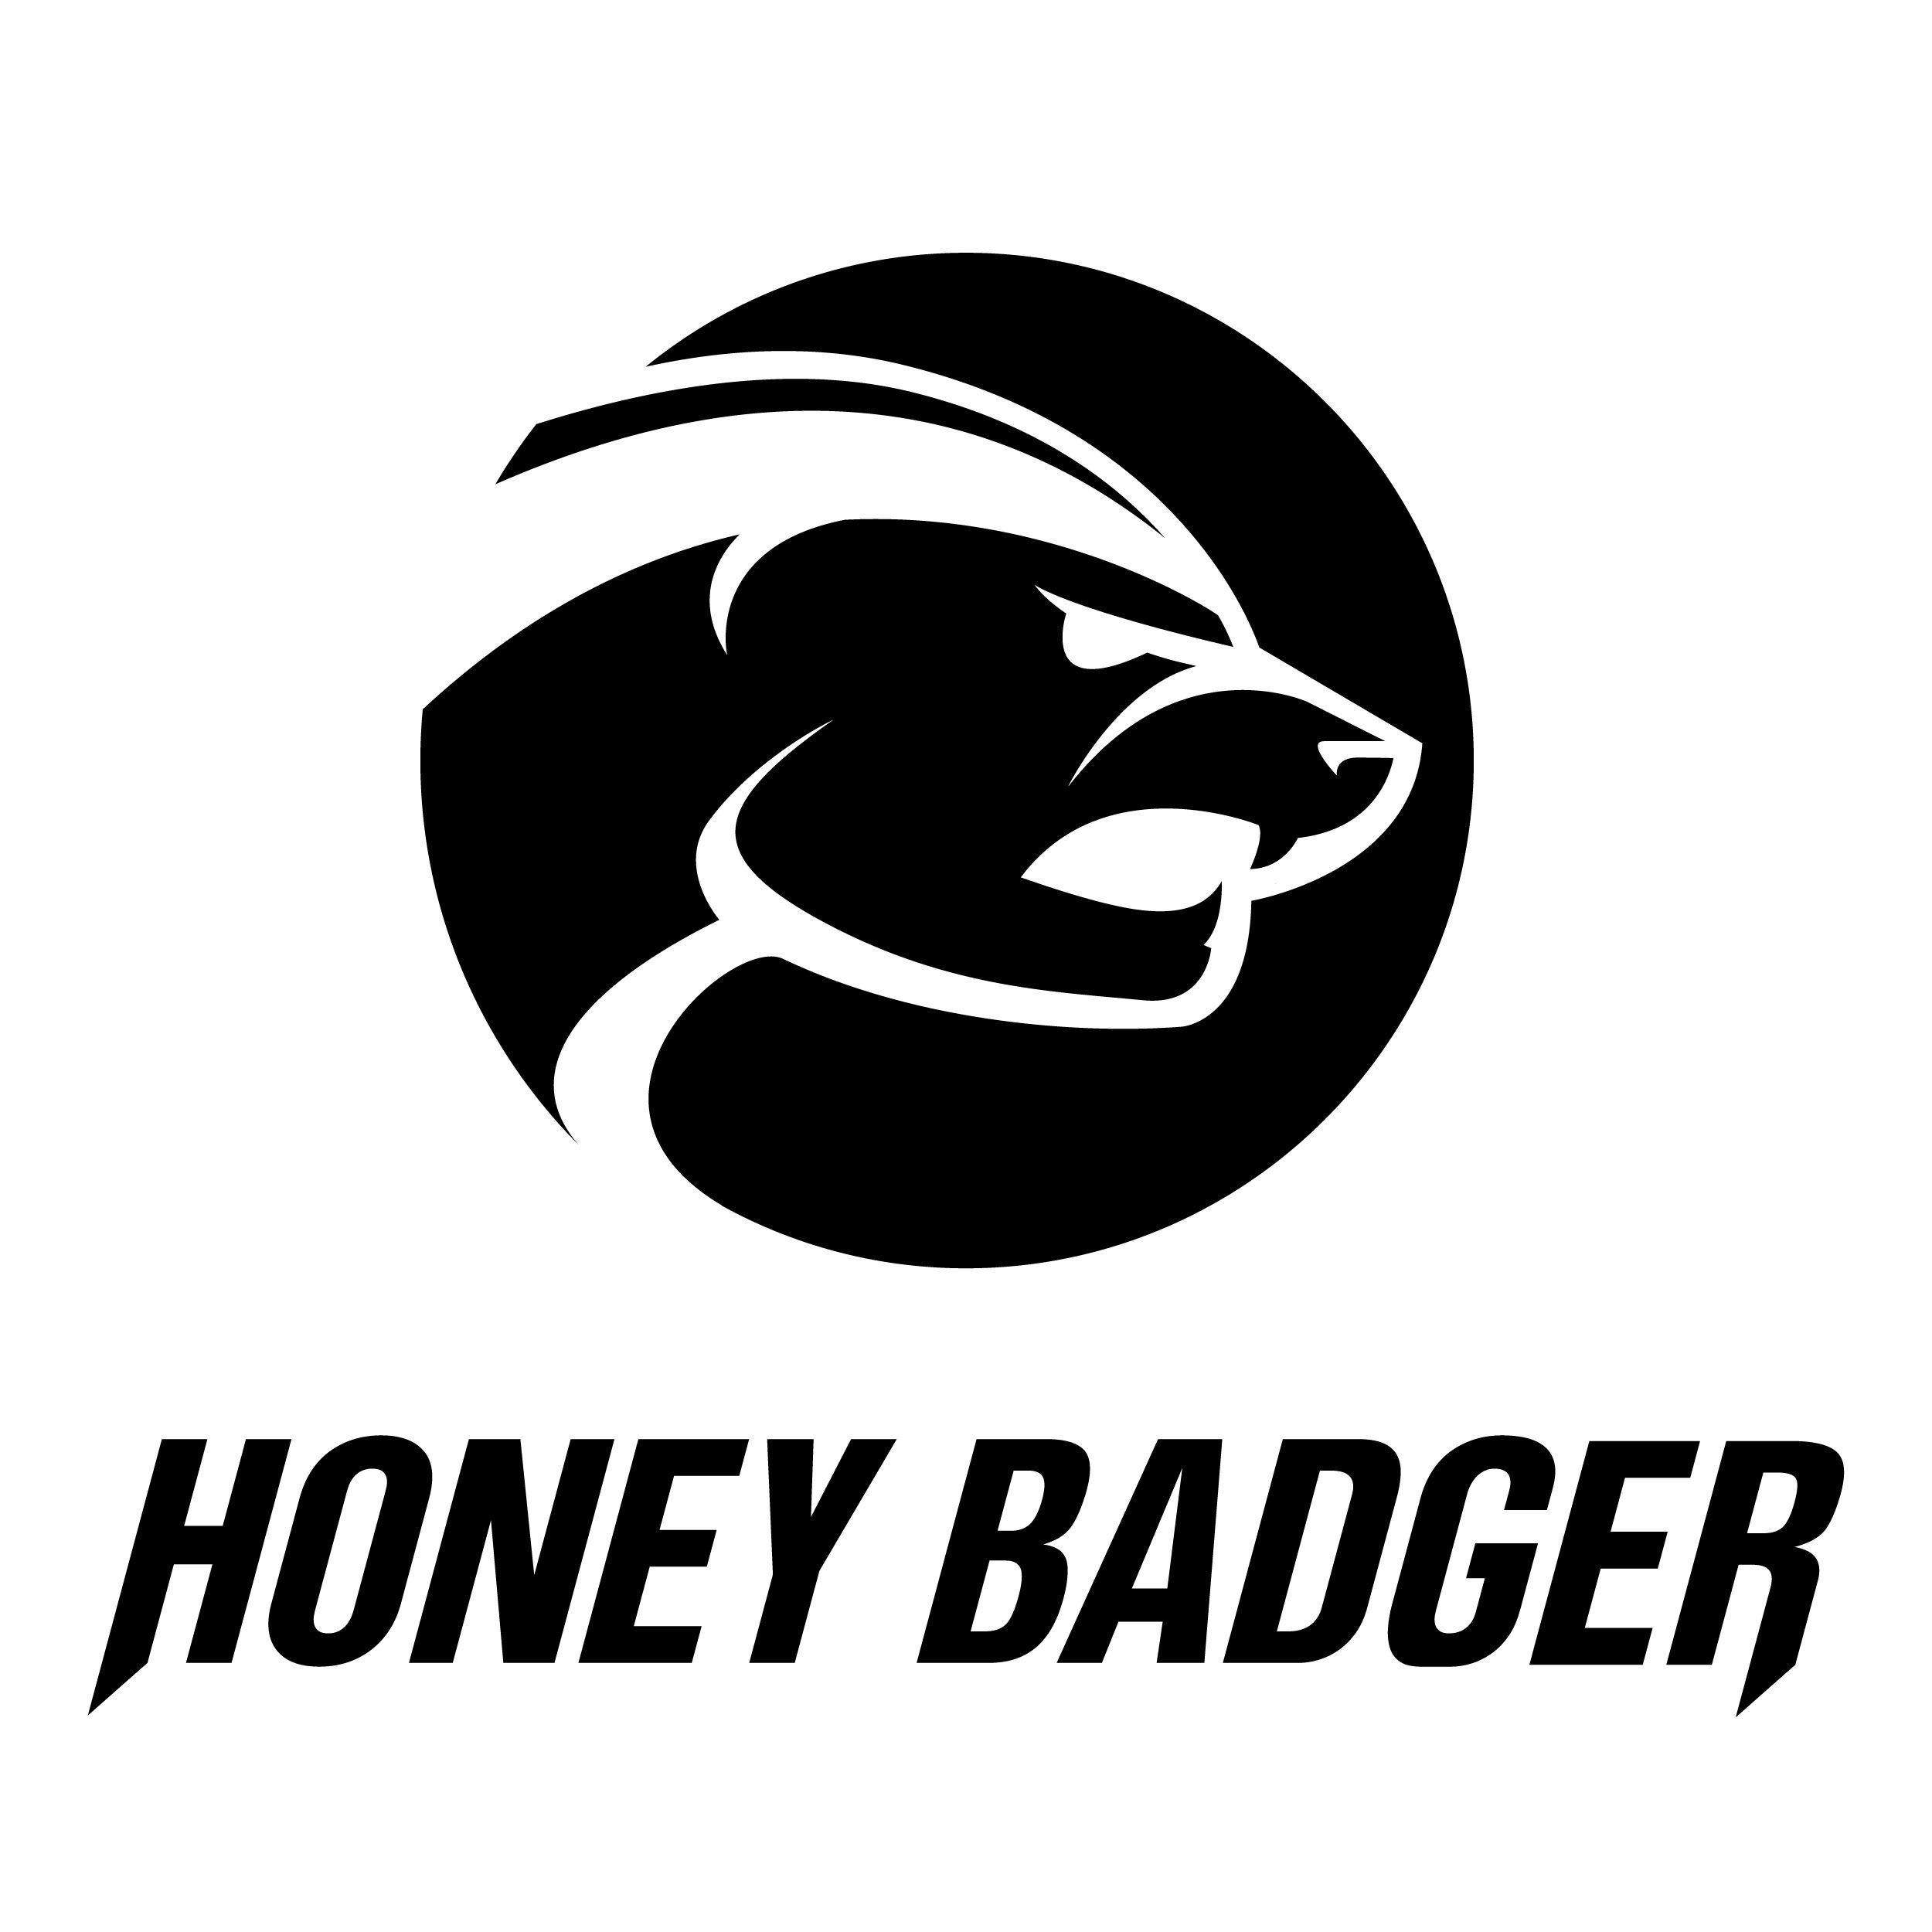 Badger Logo - Current Sponsors. LOGO. Honey badger, Logos and Badger